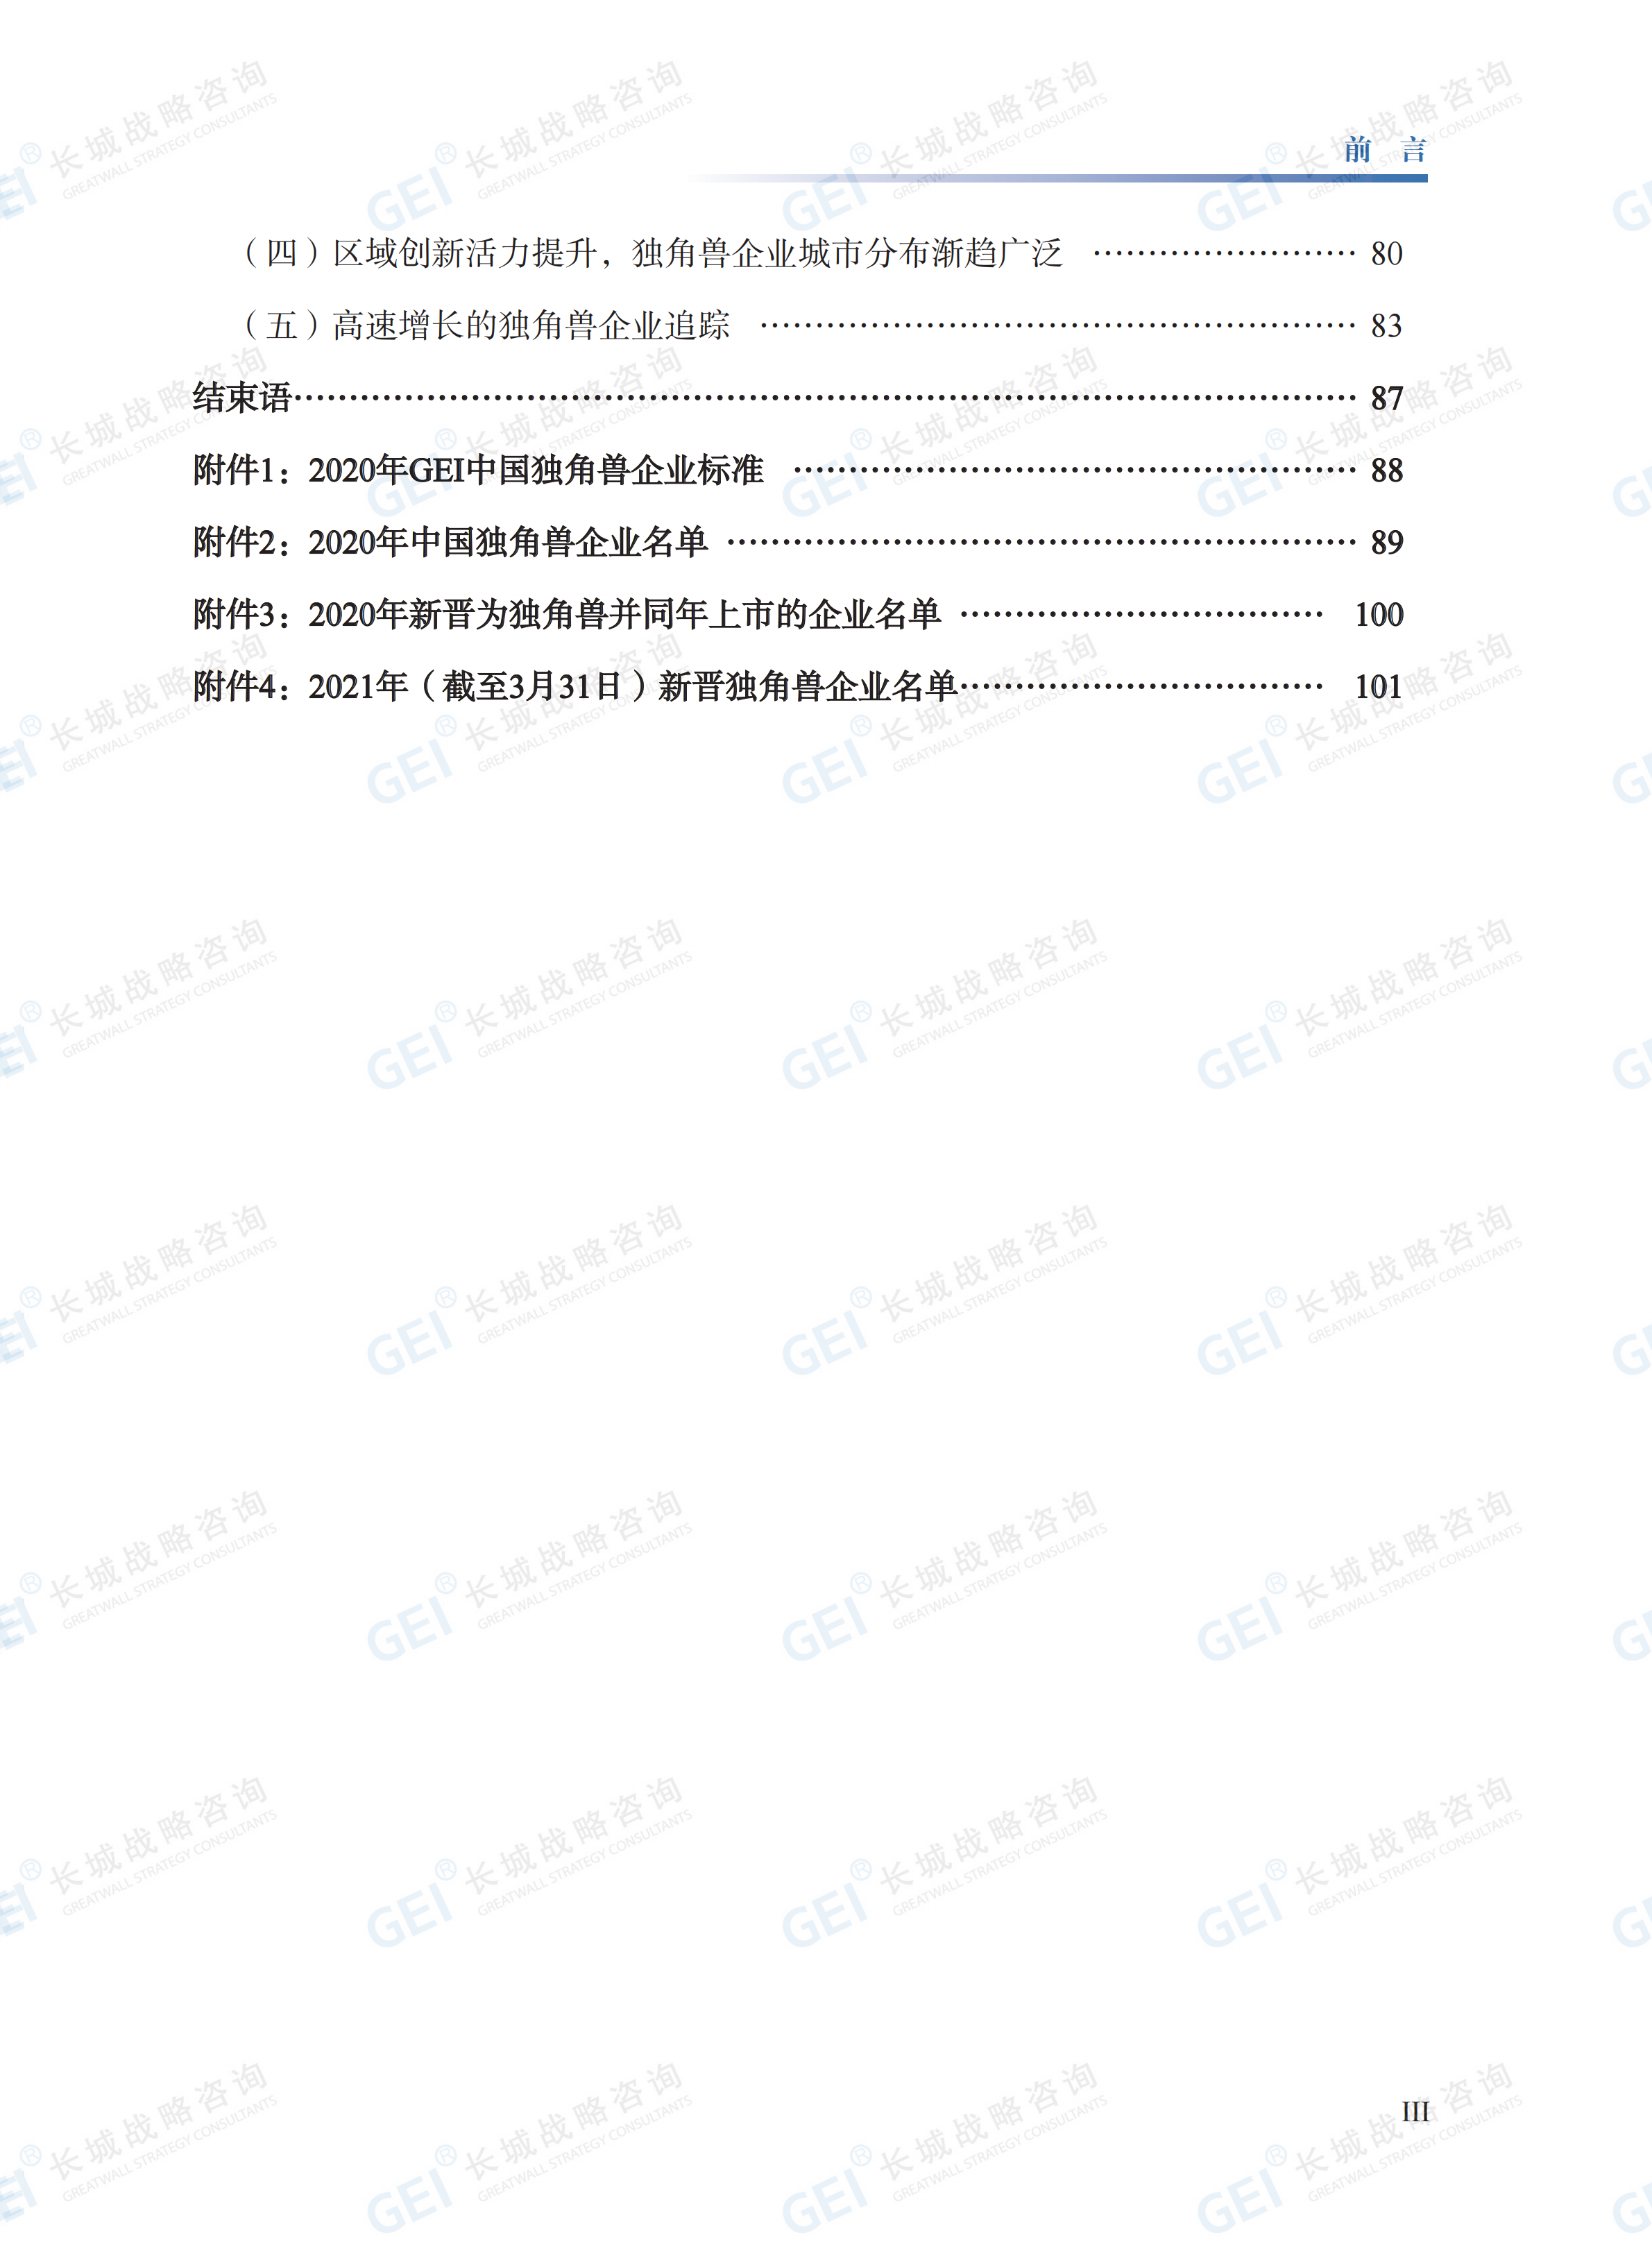 中國獨角獸企業研究報告2021-水印(1)_07.png